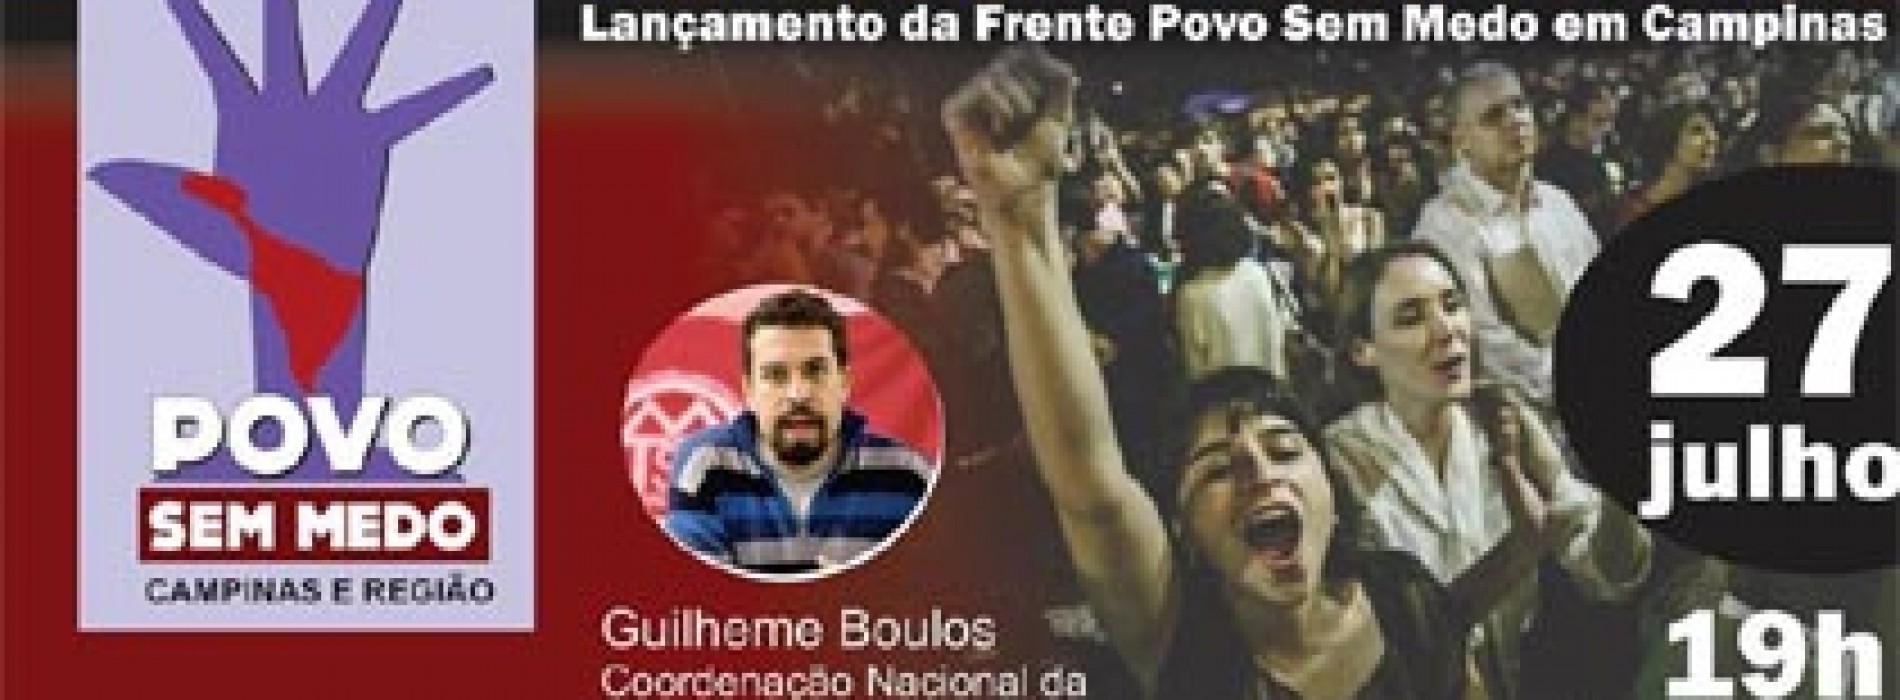 Movimentos sociais lançam a Frente Povo Sem Medo em Campinas